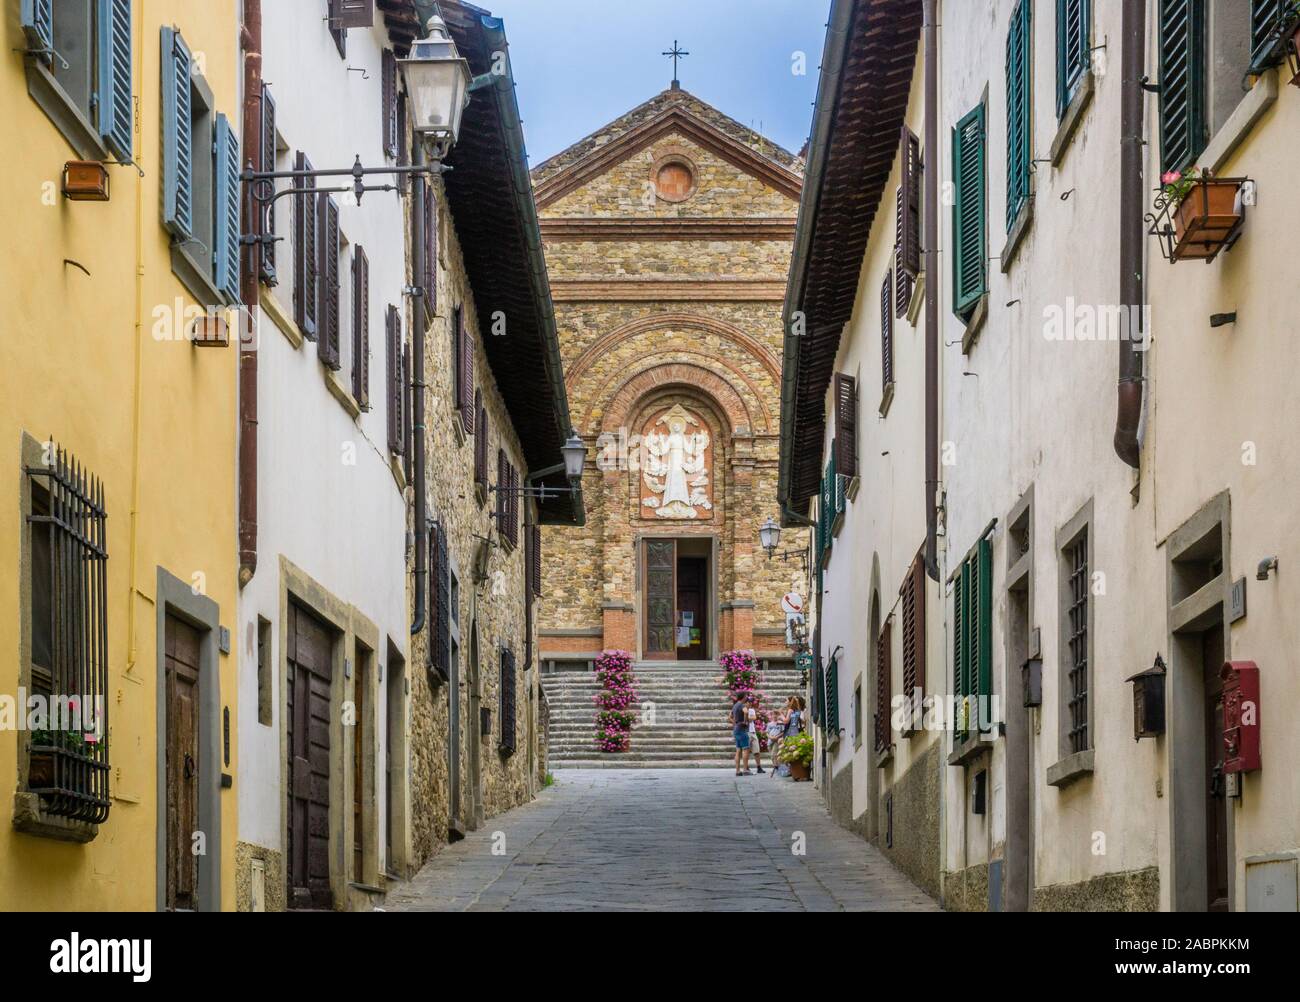 Via Santa Maria angosto que conduce a la iglesia de Santa Maria Assunta, Panzano en Chianti, en la región rural de Chianti, provincia de Siena, Toscana, Foto de stock